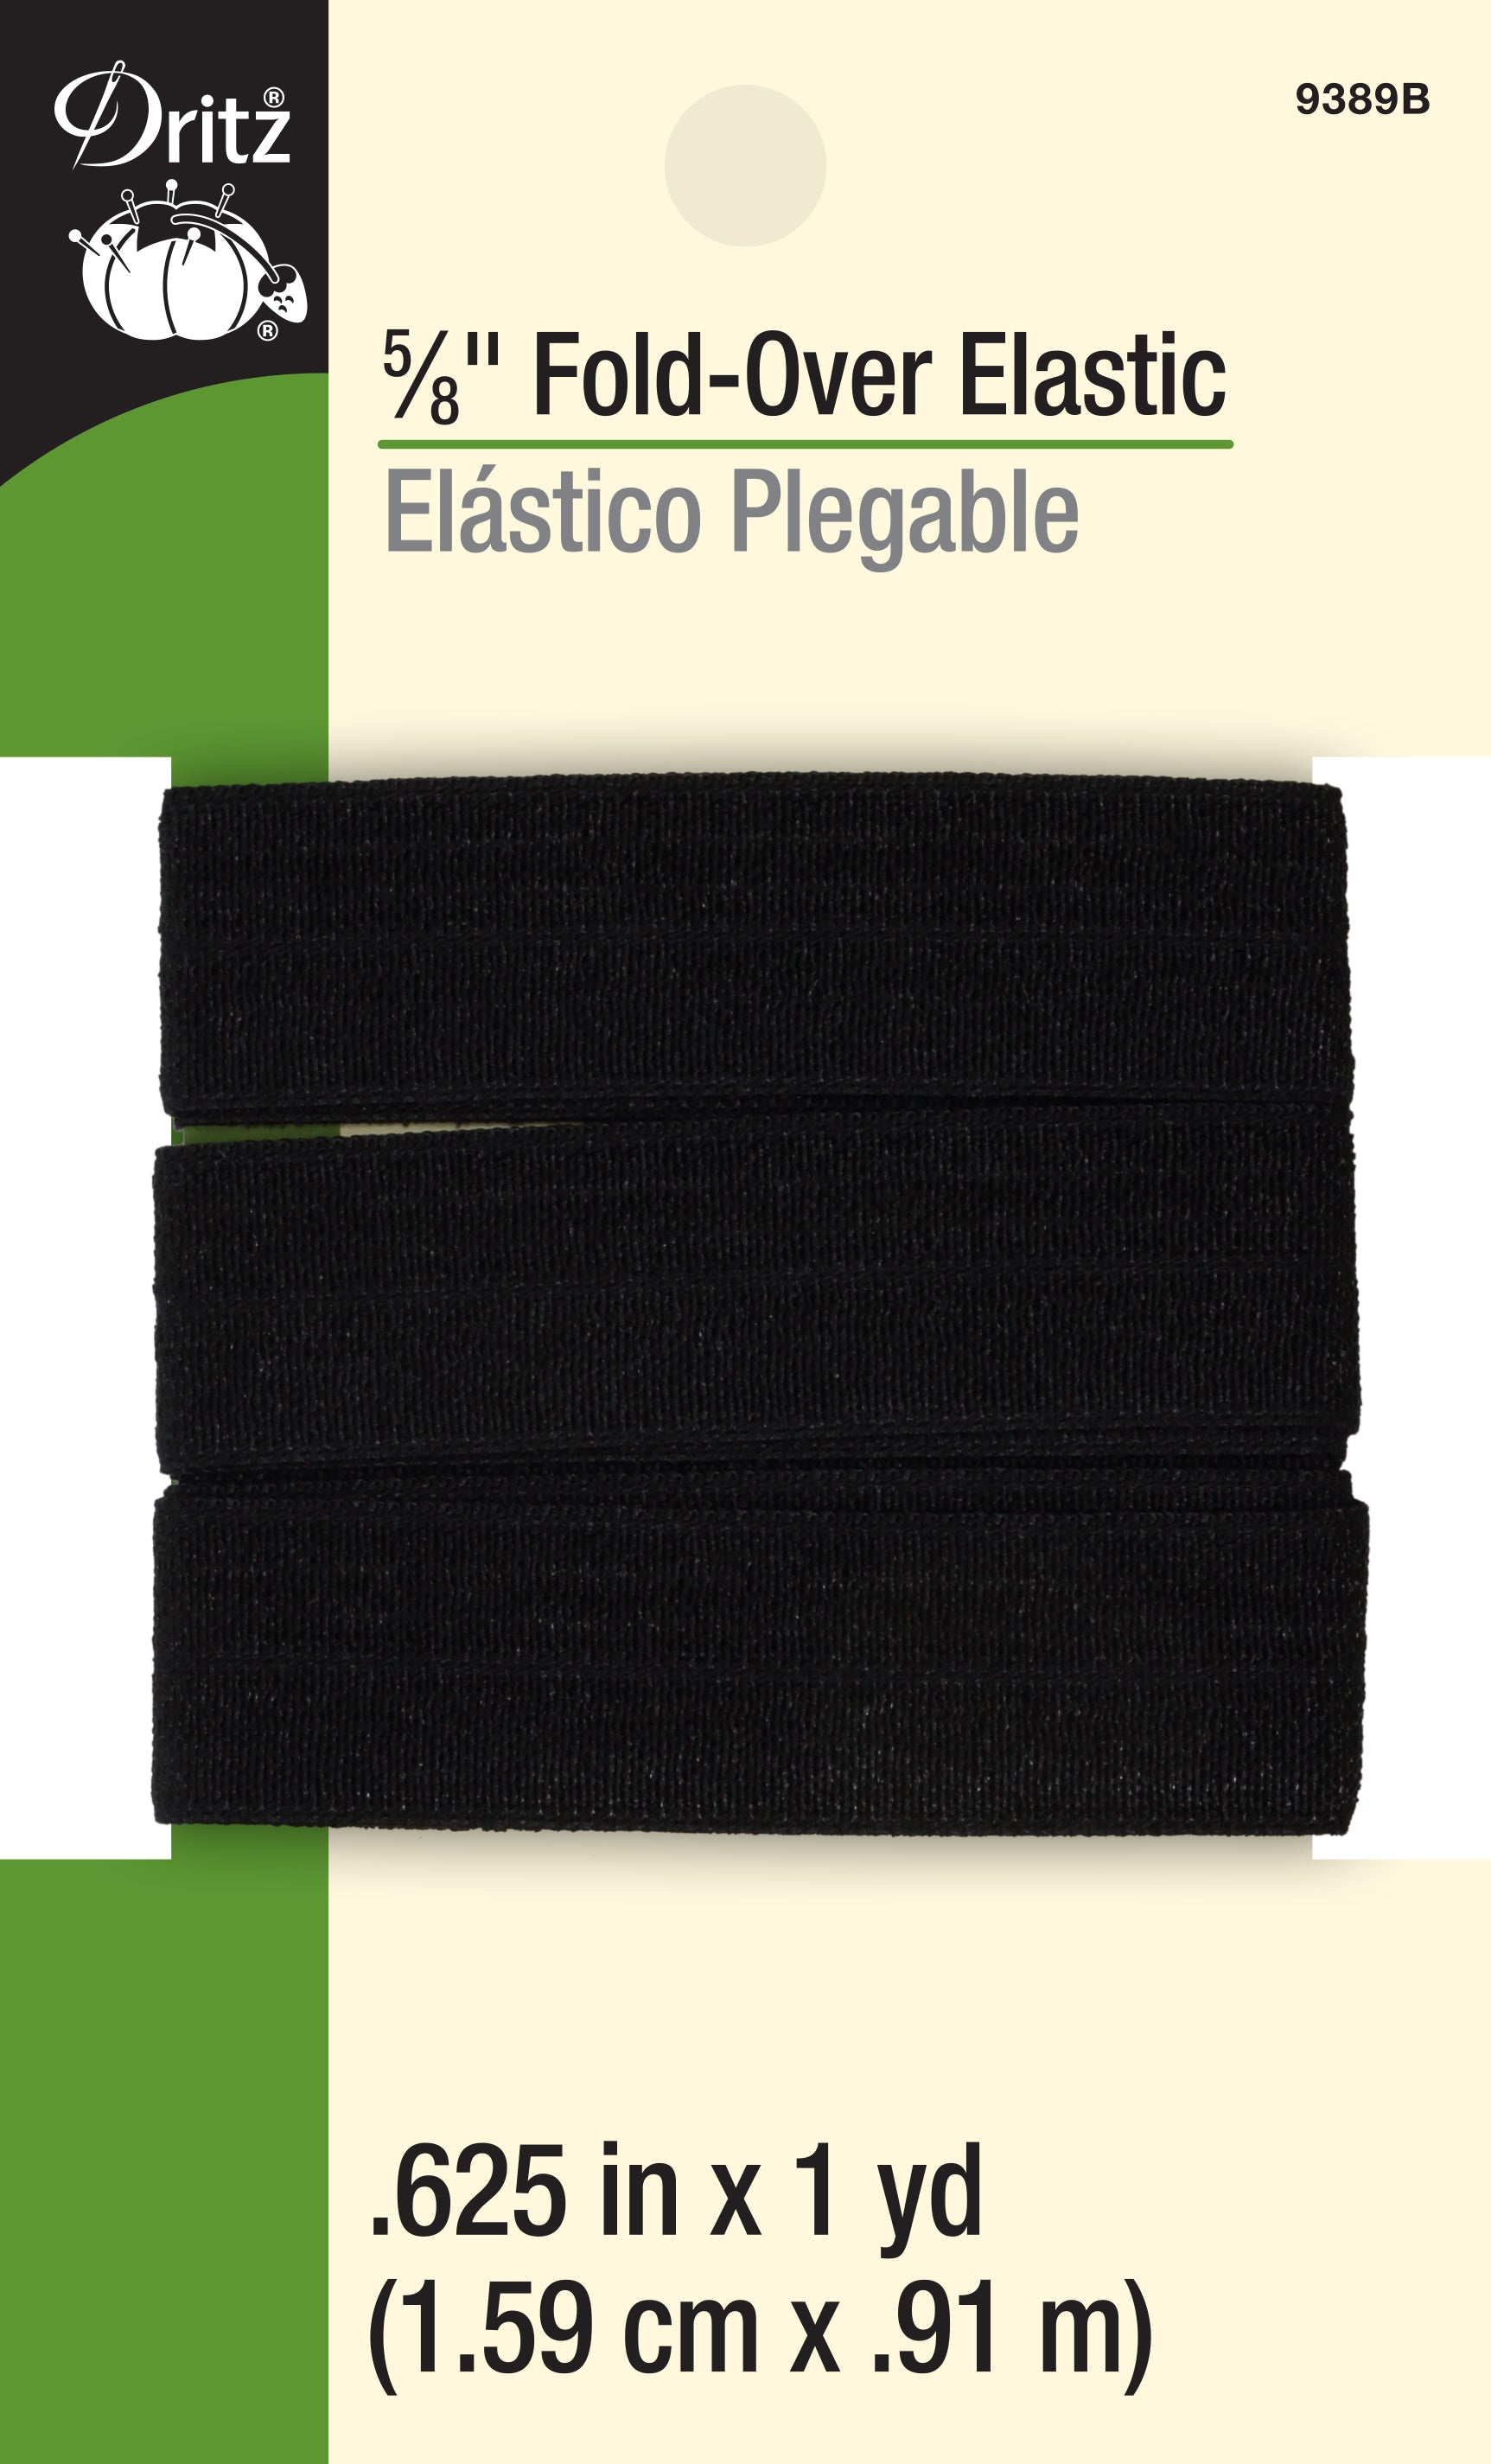 Dritz Fold-Over Elastic 5/8X1yd Black